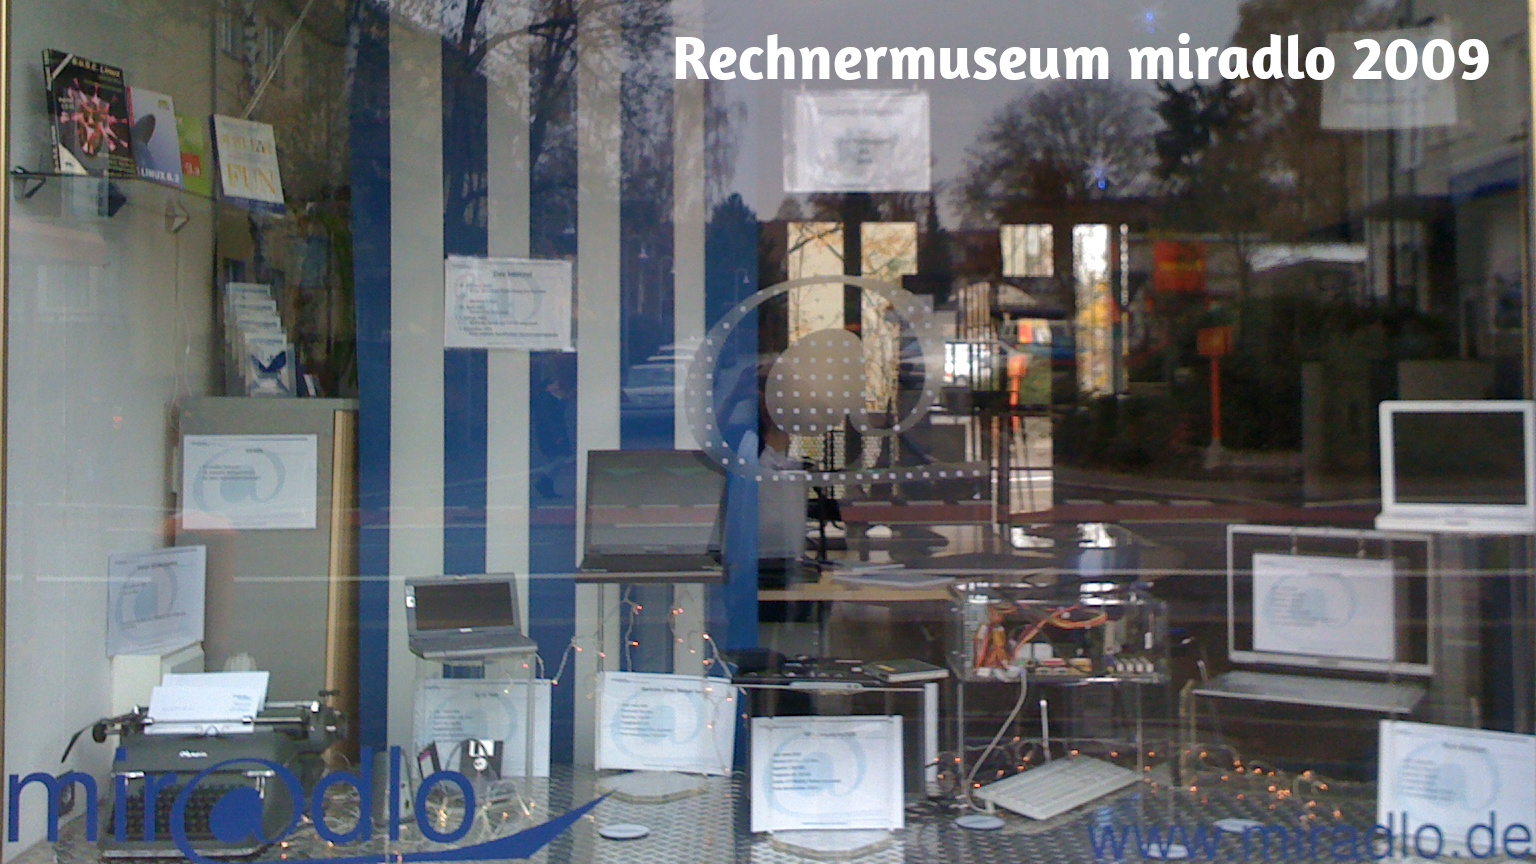 Schaufenster blau-weiß mit diversen Rechnern von mechanischer Schreibmaschine bis 2000-er Laptop als Deko